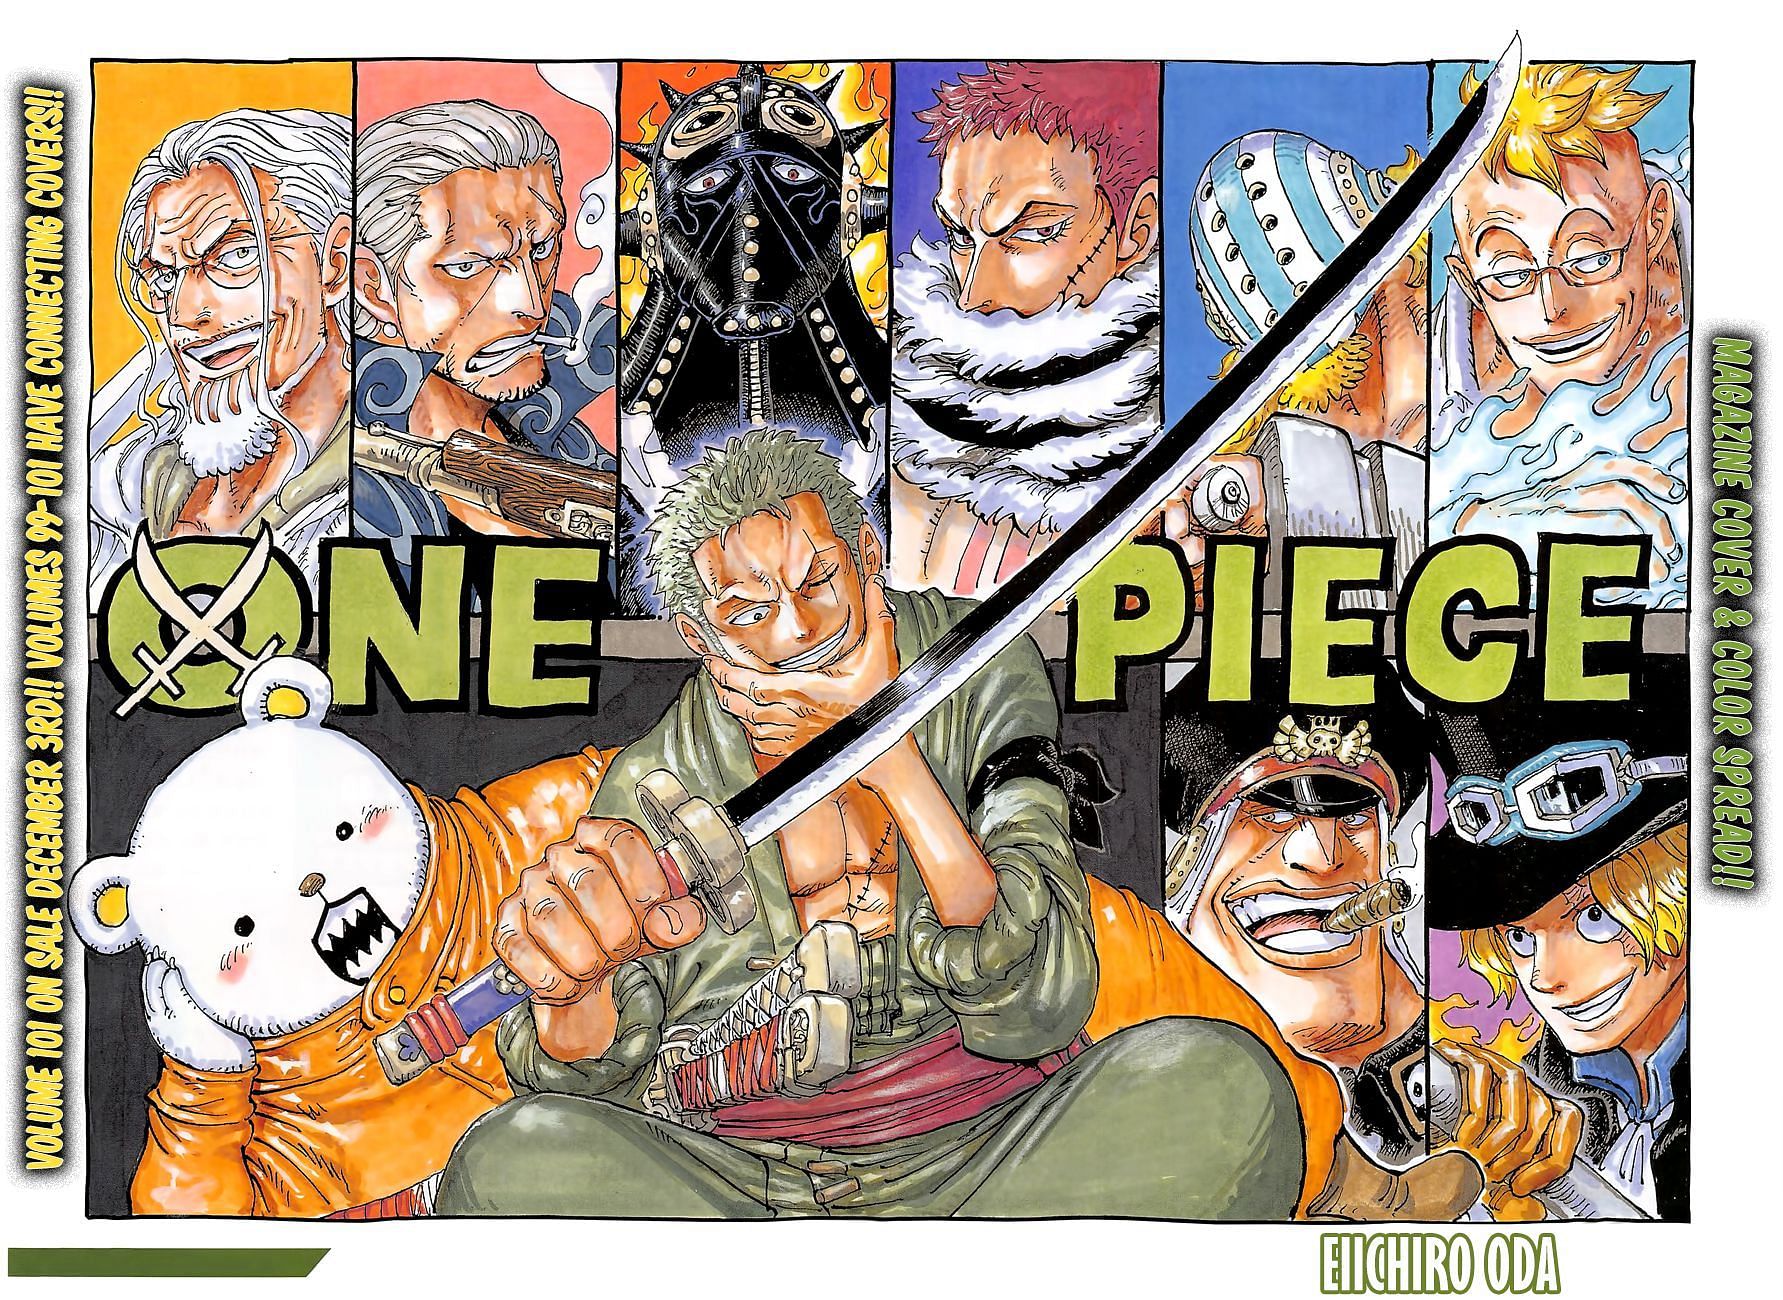 Wall Calendar 2021 Anime One Piece